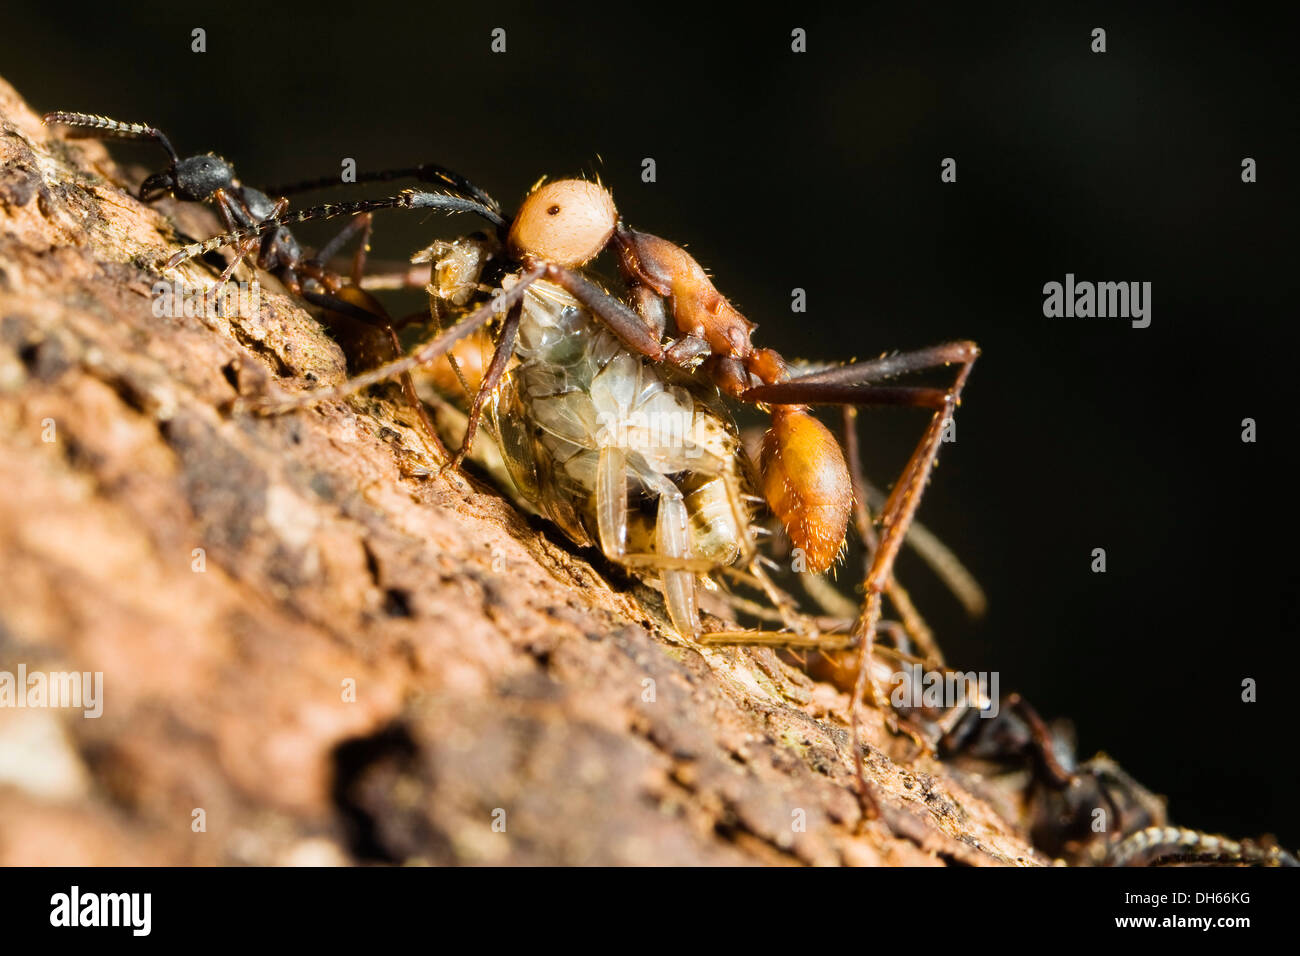 Army Ant (Eciton burchellii) with prey, rainforest, Costa Rica, Central America Stock Photo